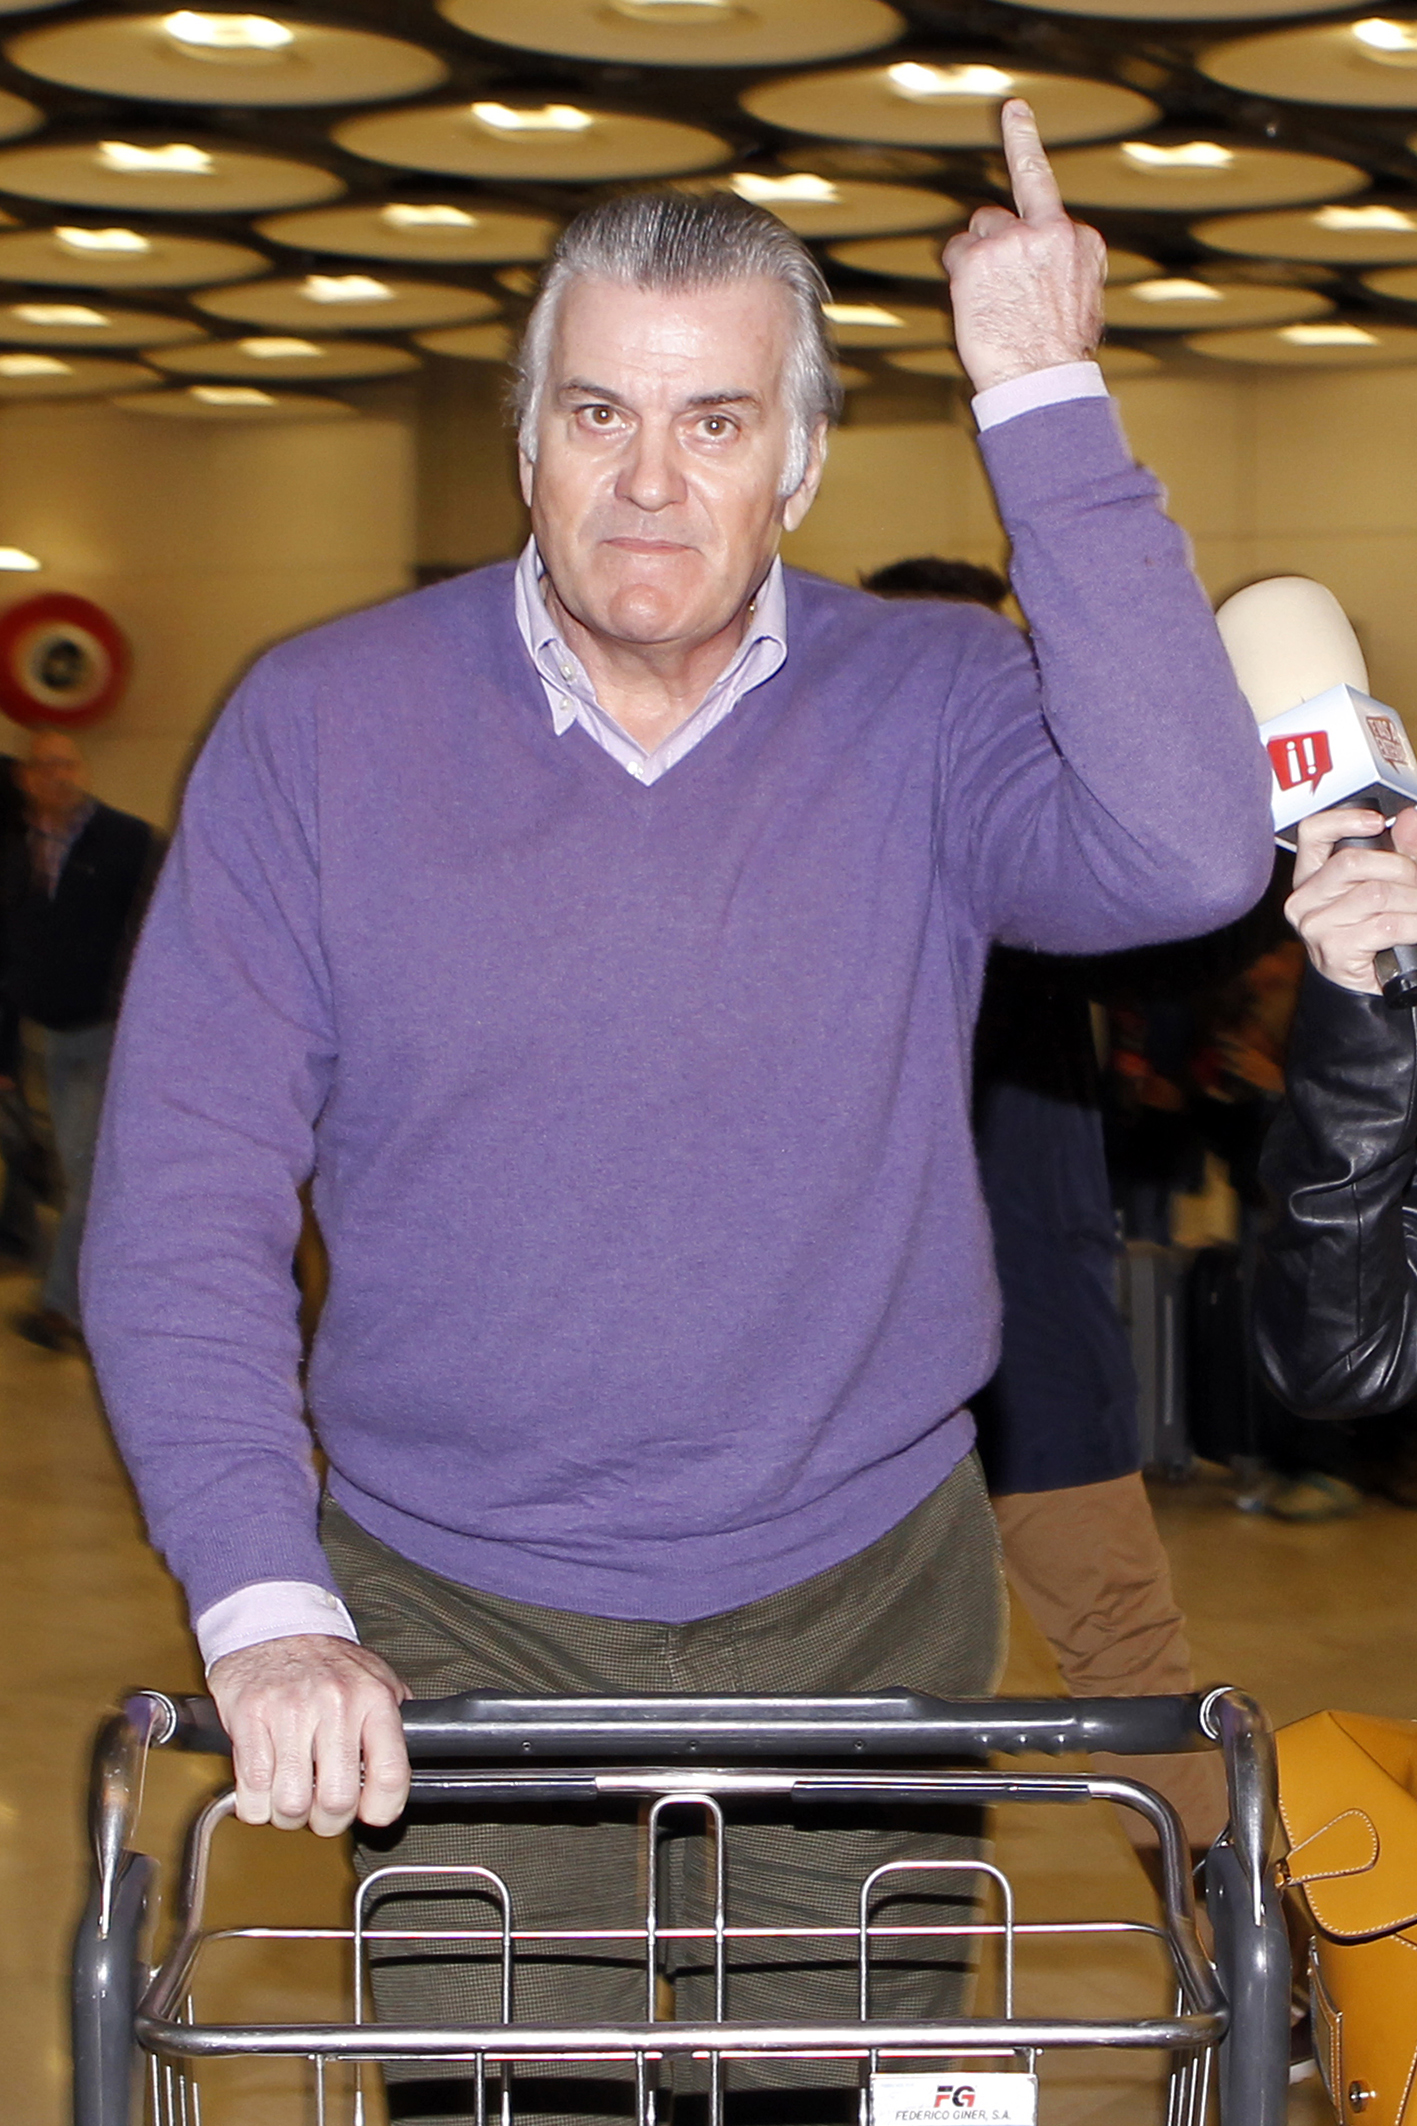 Luis Bárcenas hace un gesto despectivo con el dedo en el aeropuerto de Barajas./LALO ÁLVAREZ 